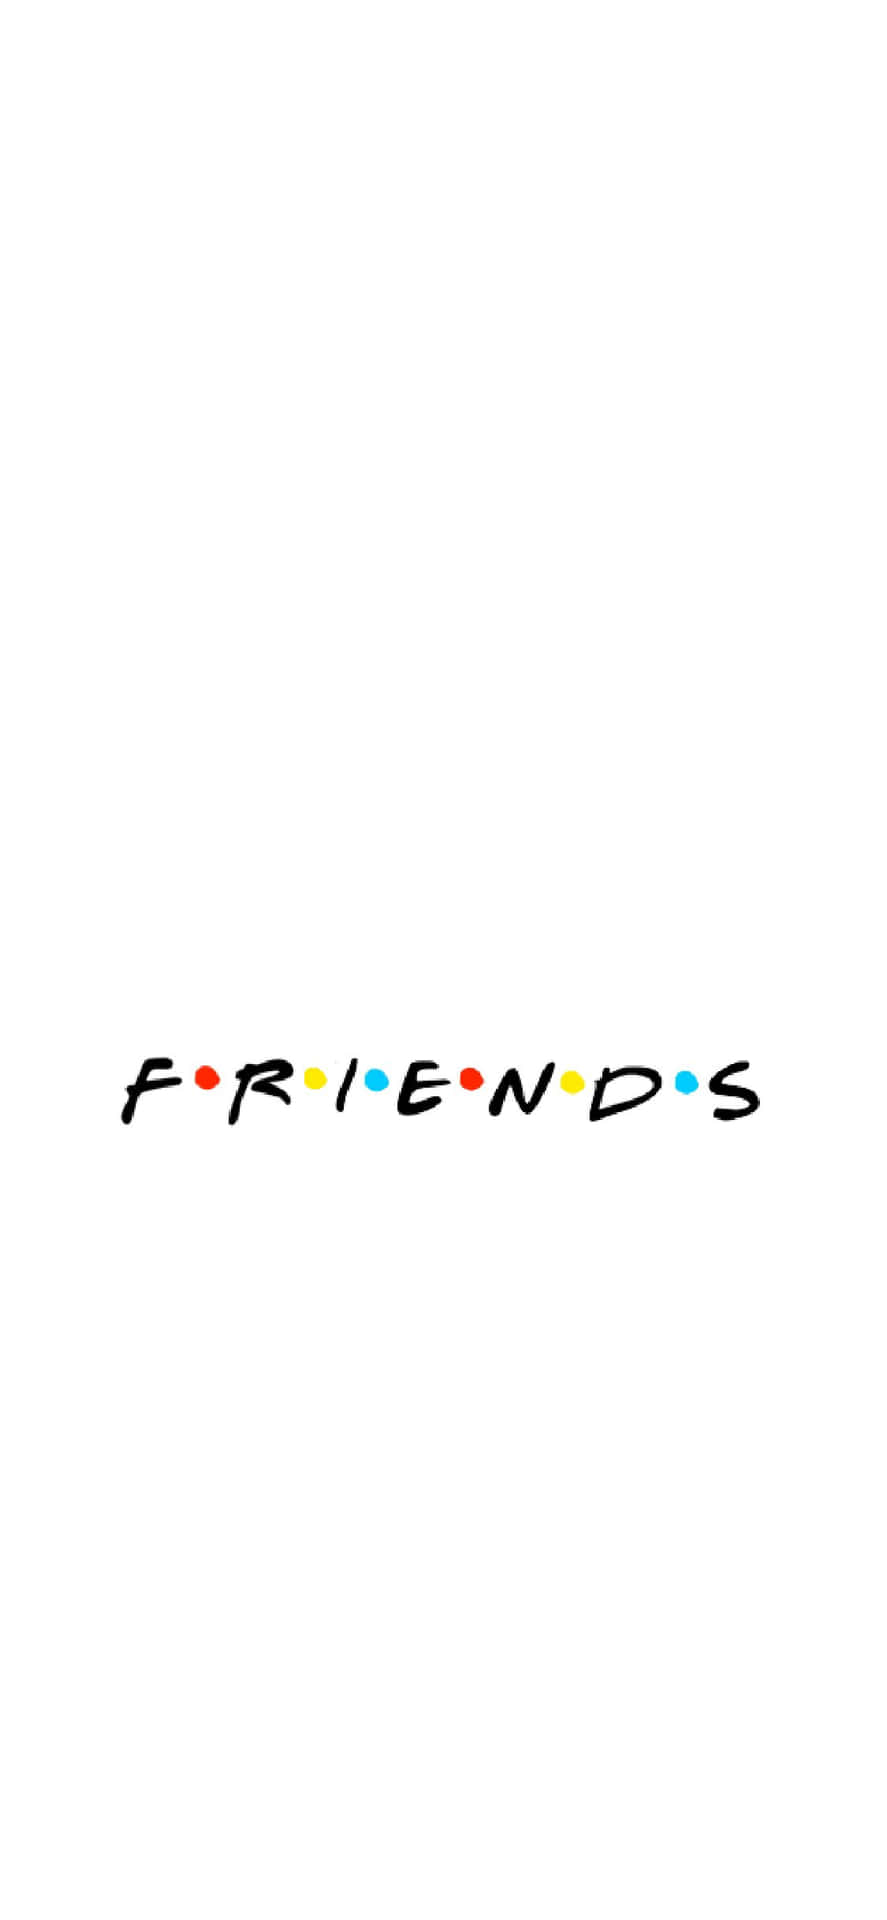 Friendly Friends Wallpaper